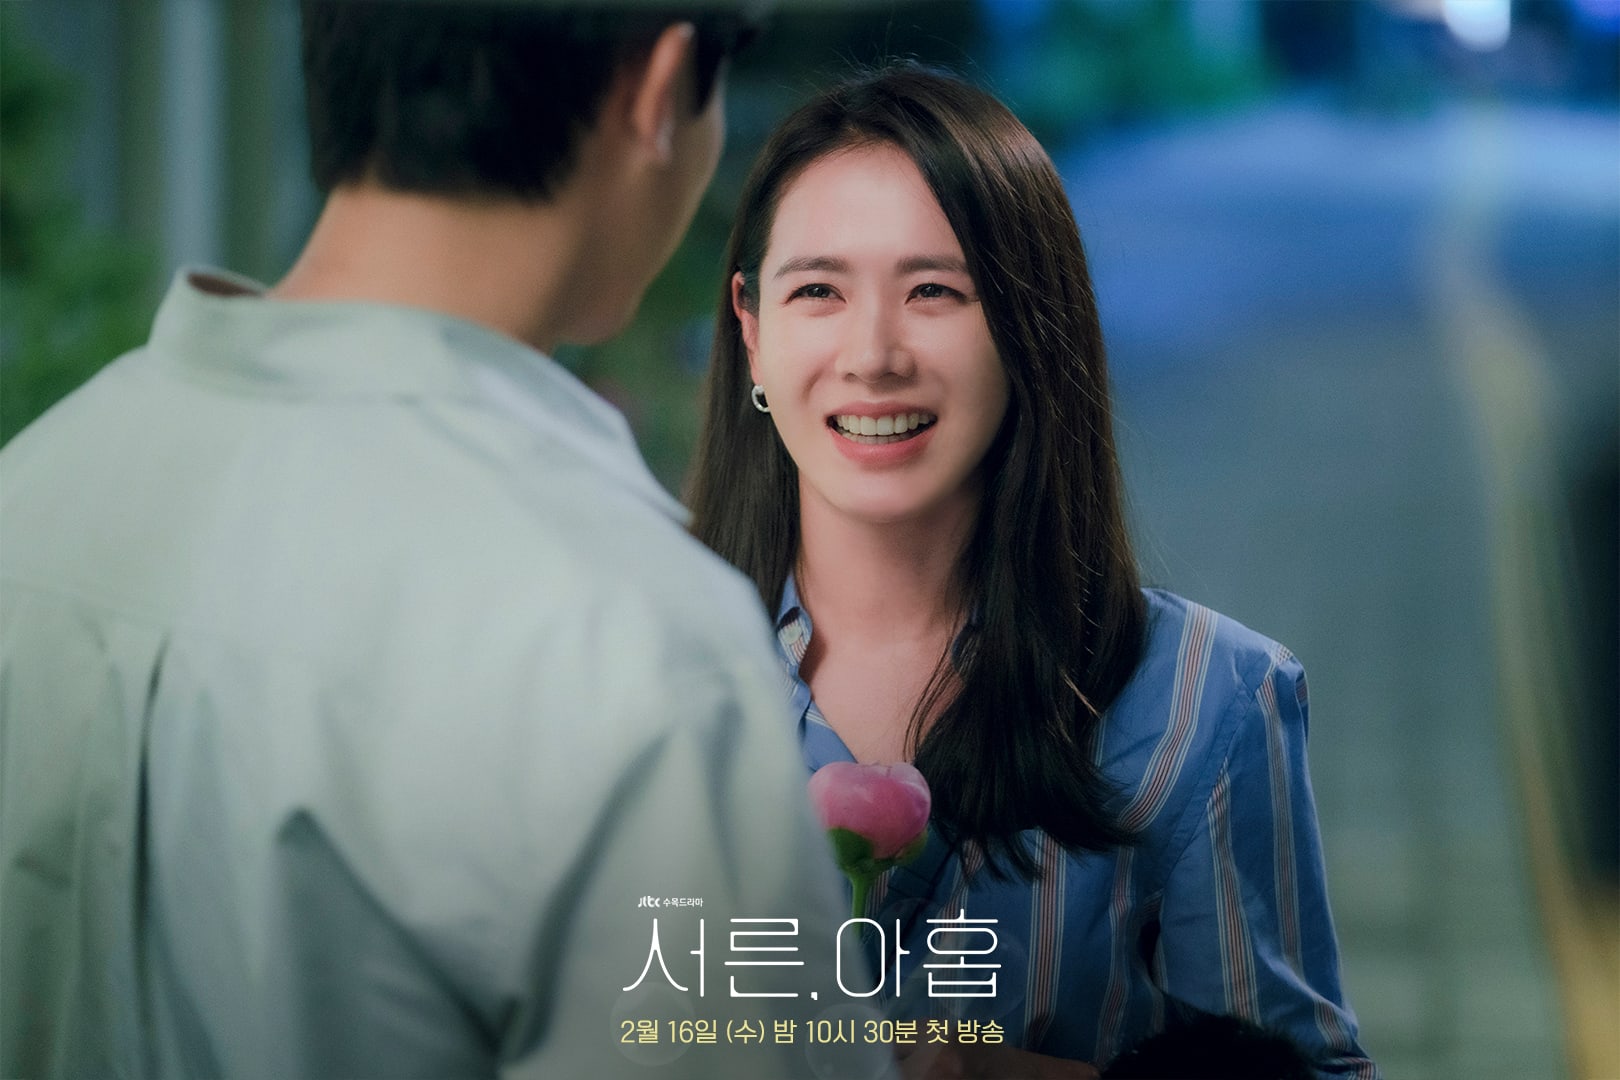 phim 39 Son ye Jin vai Cha Mi Jo 02 - 39: Phim tâm lý về cuộc đời người phụ nữ trước ngưỡng tuổi 40